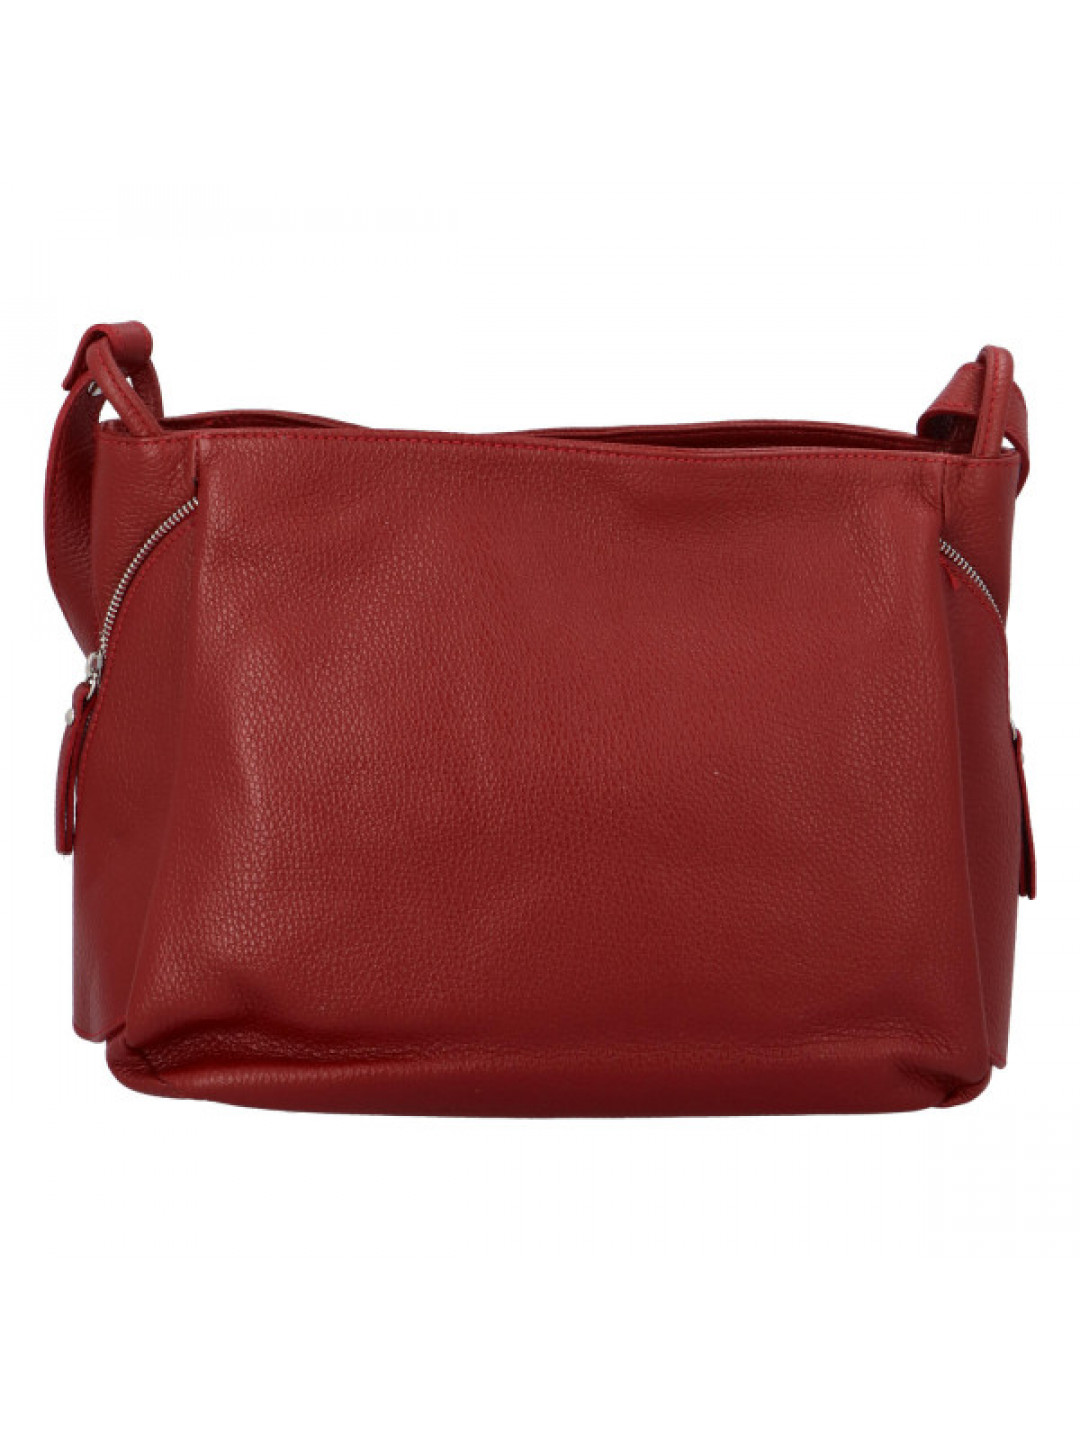 Praktická kožená dámská kabelka Marcella červená